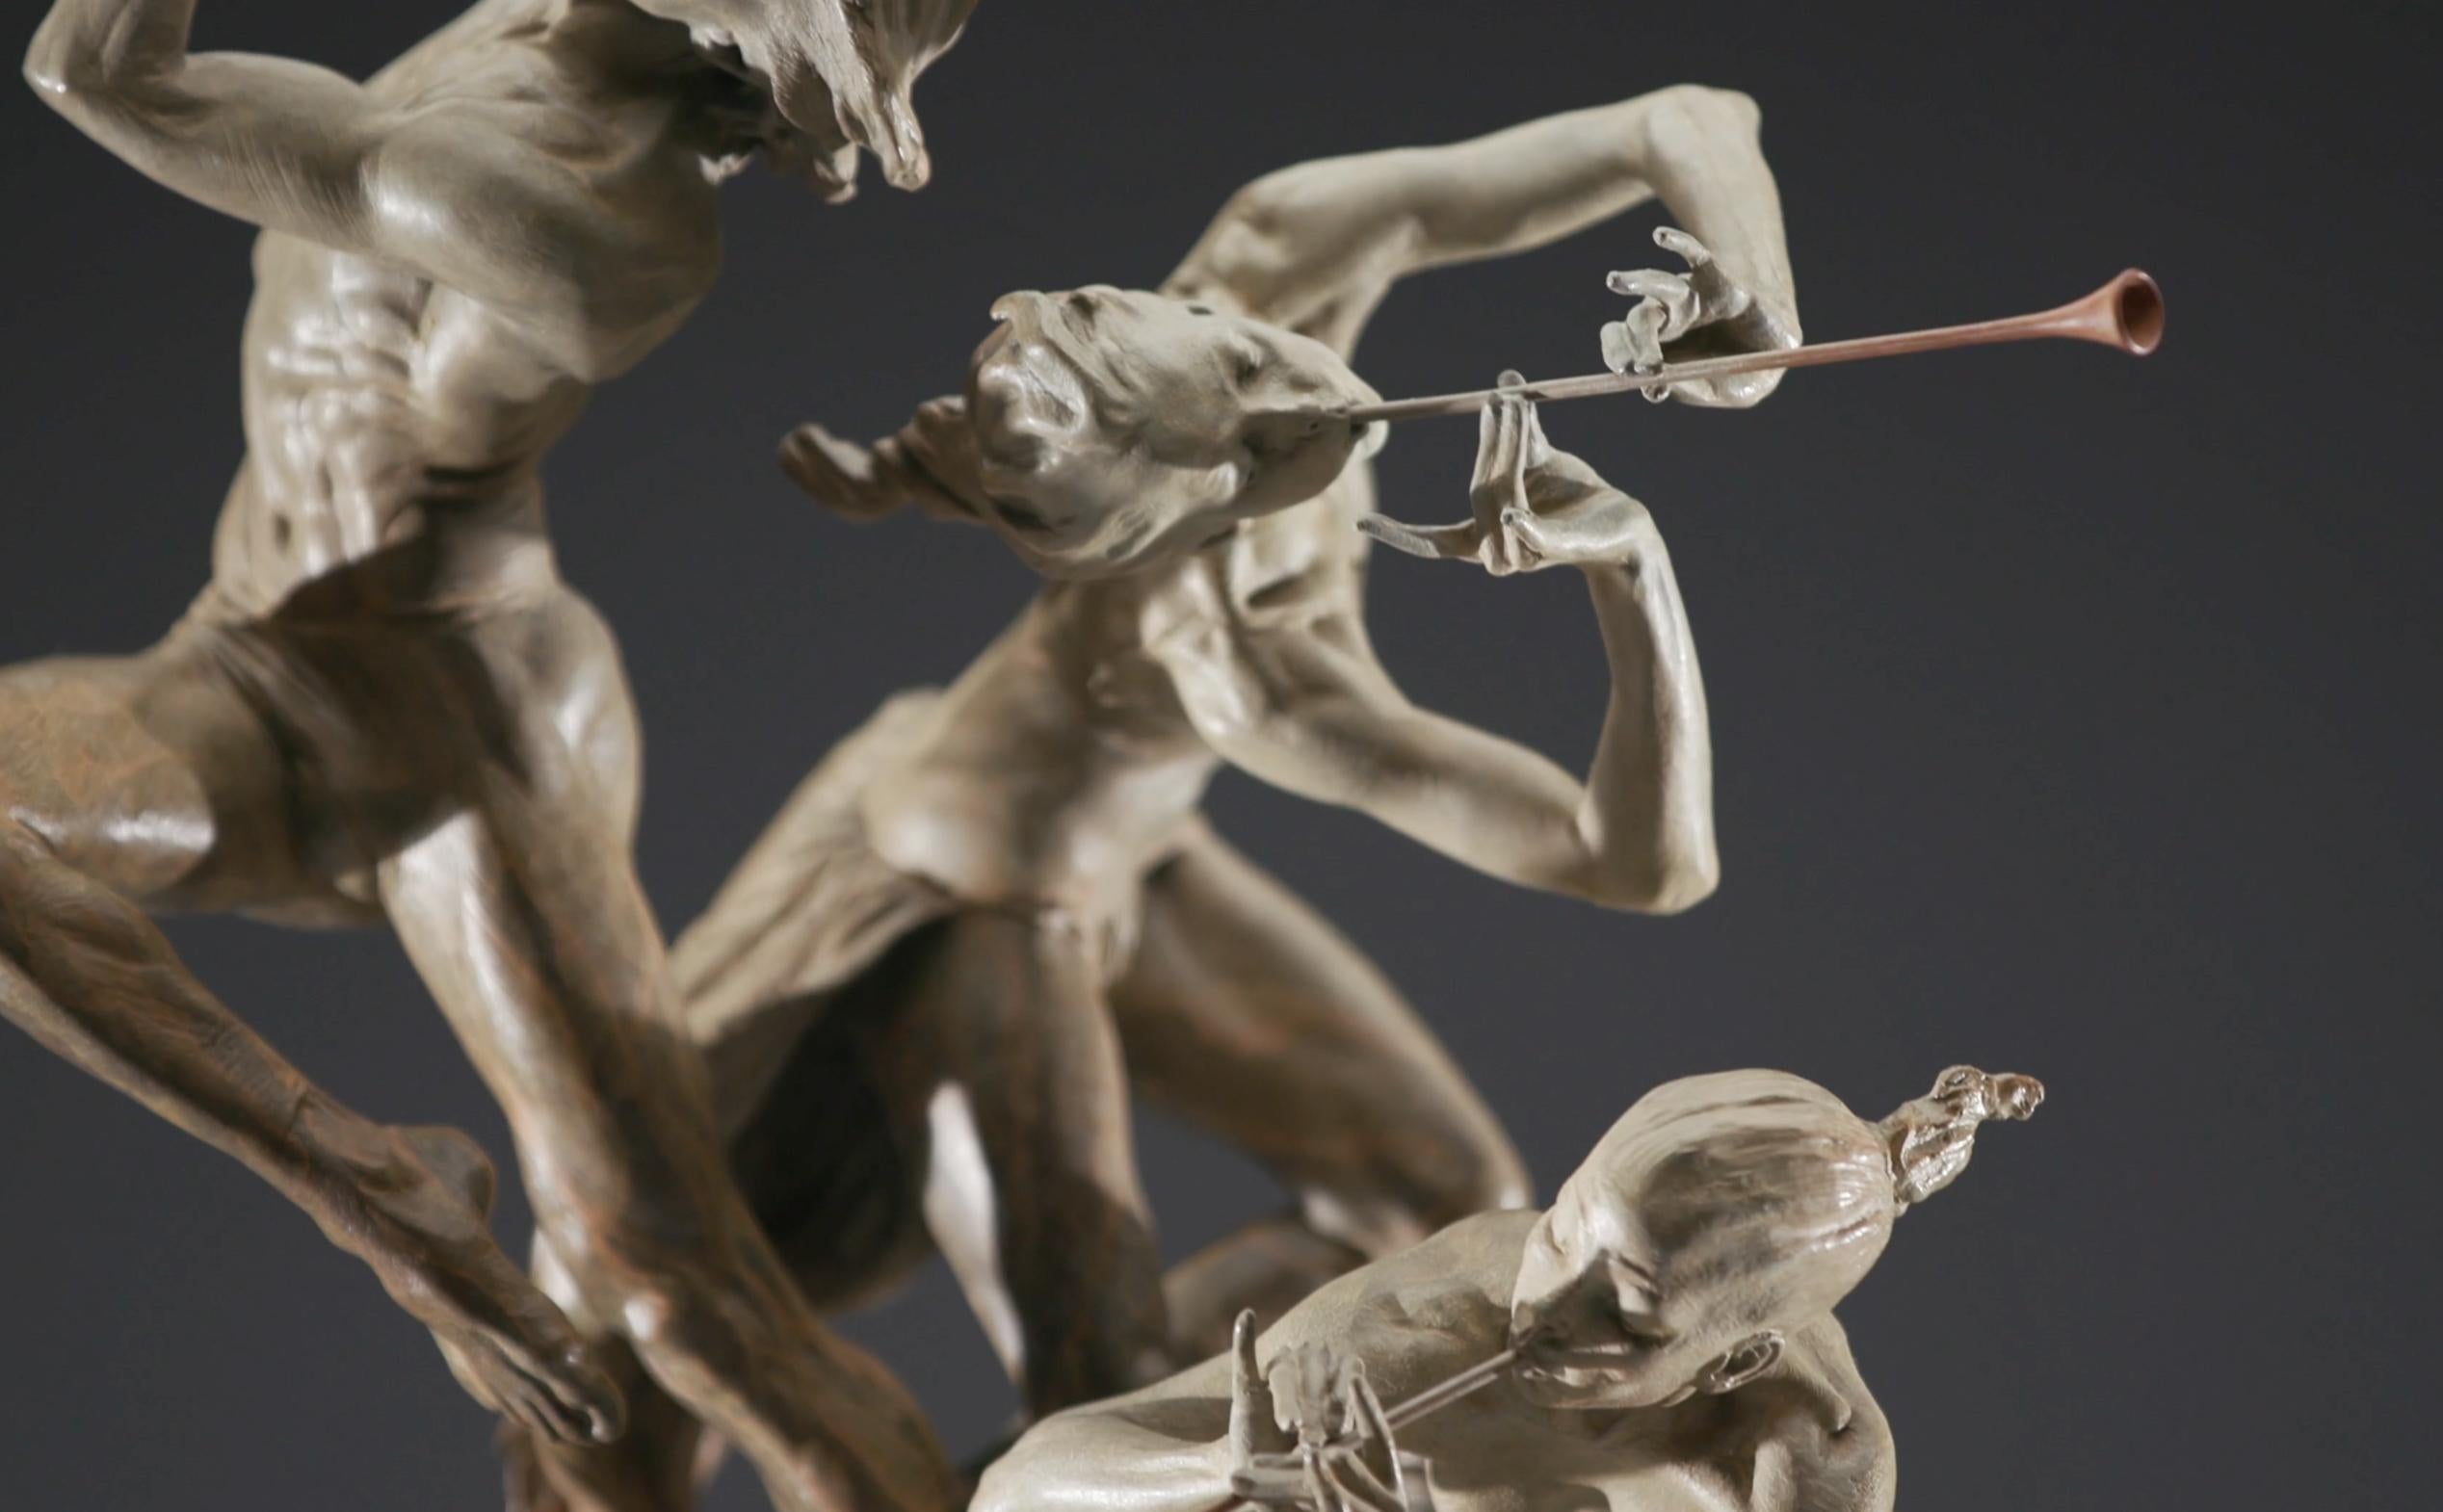 Joie de Vivre, Atelier - Sculpture by Richard MacDonald